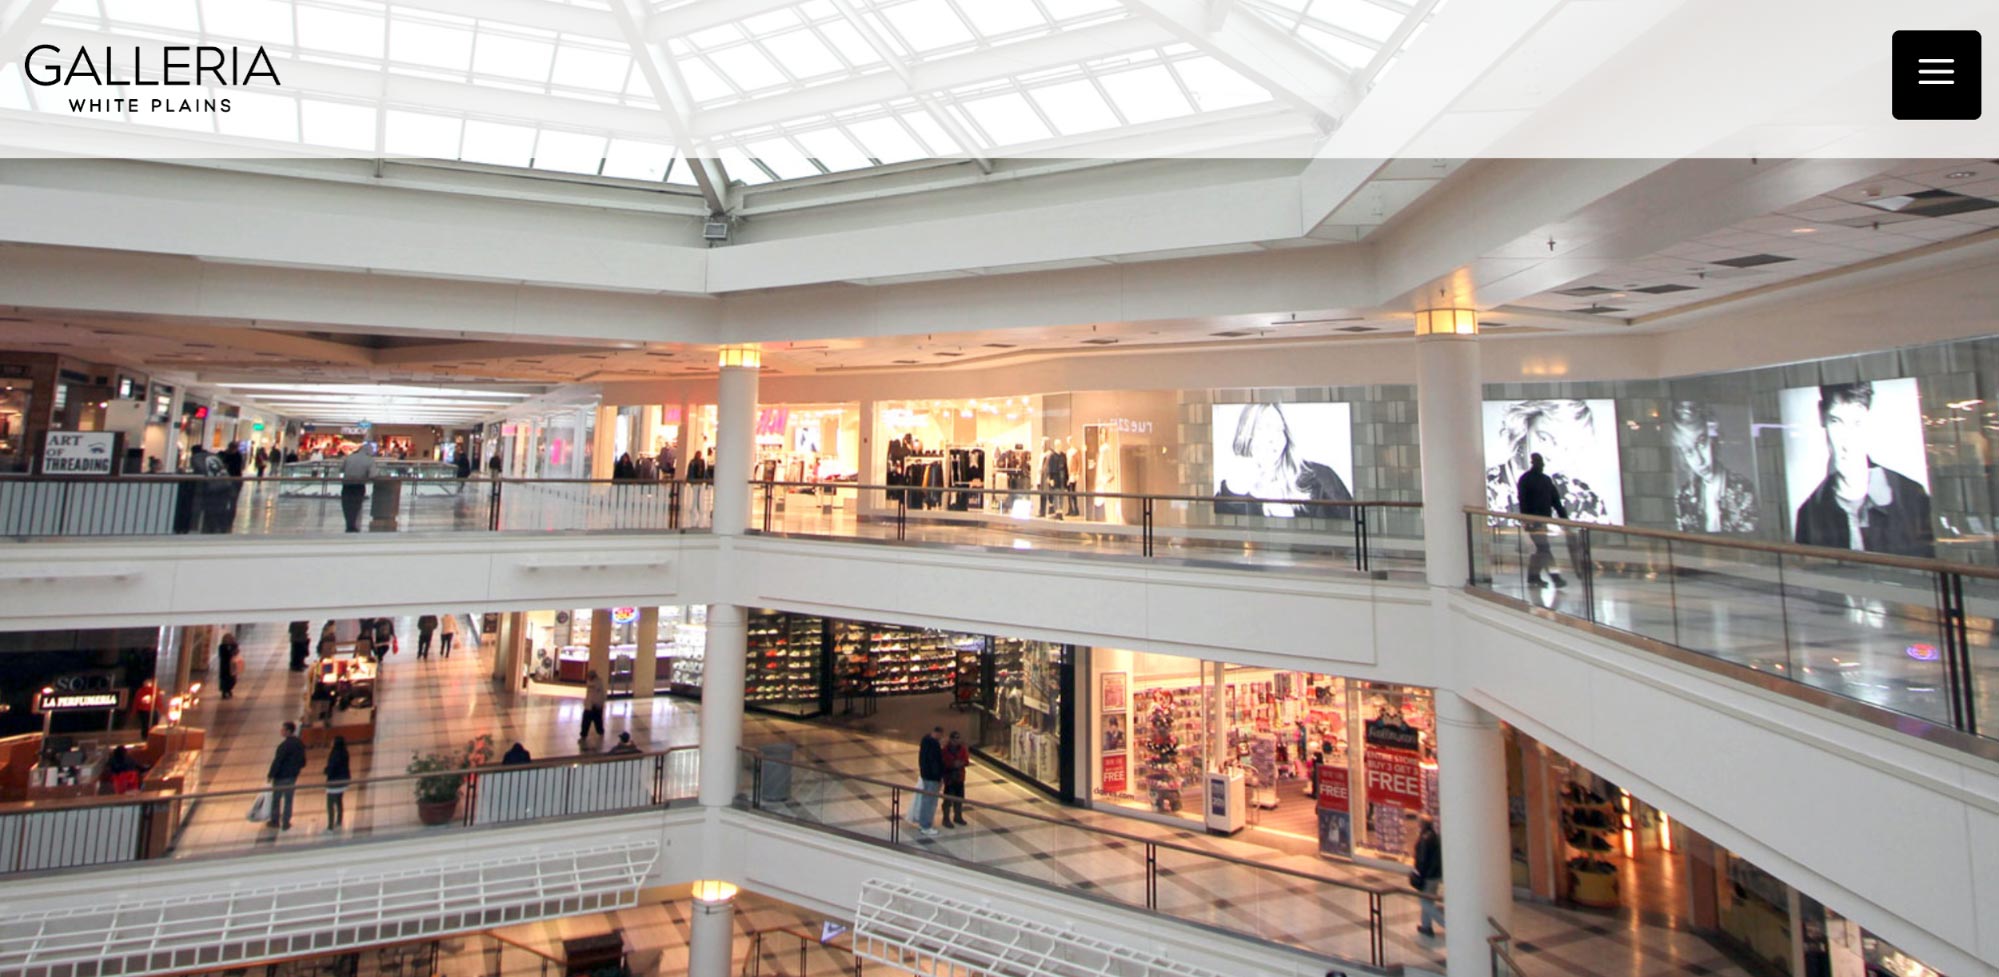 Galleria mall